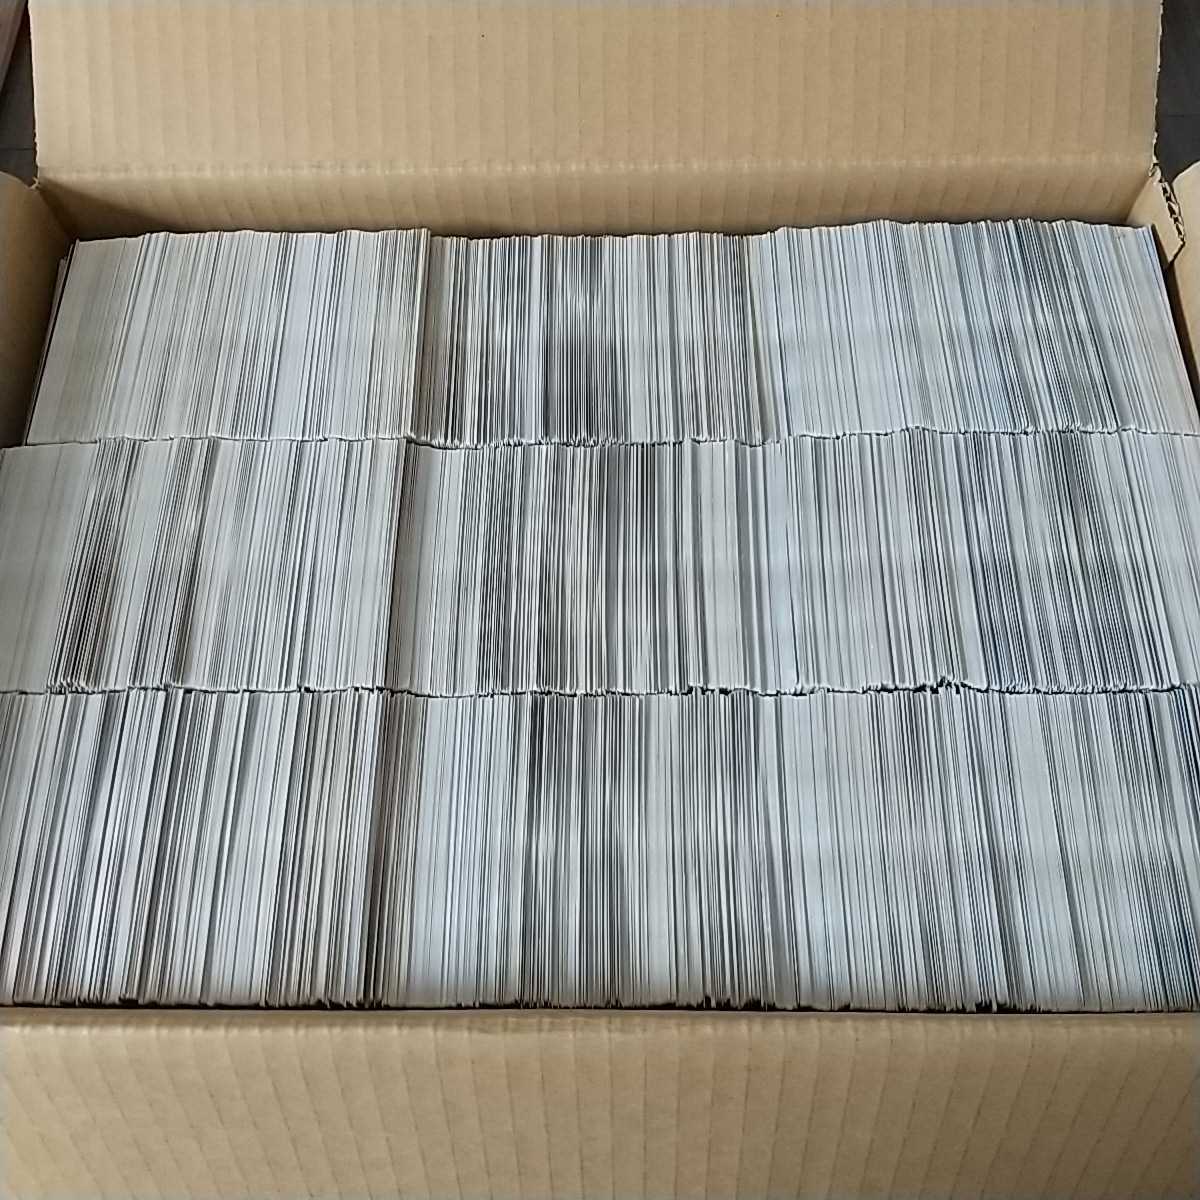 遊戯王カード 日本語版 全て字レア 約10800枚 大量 引退 まとめ売り 1 